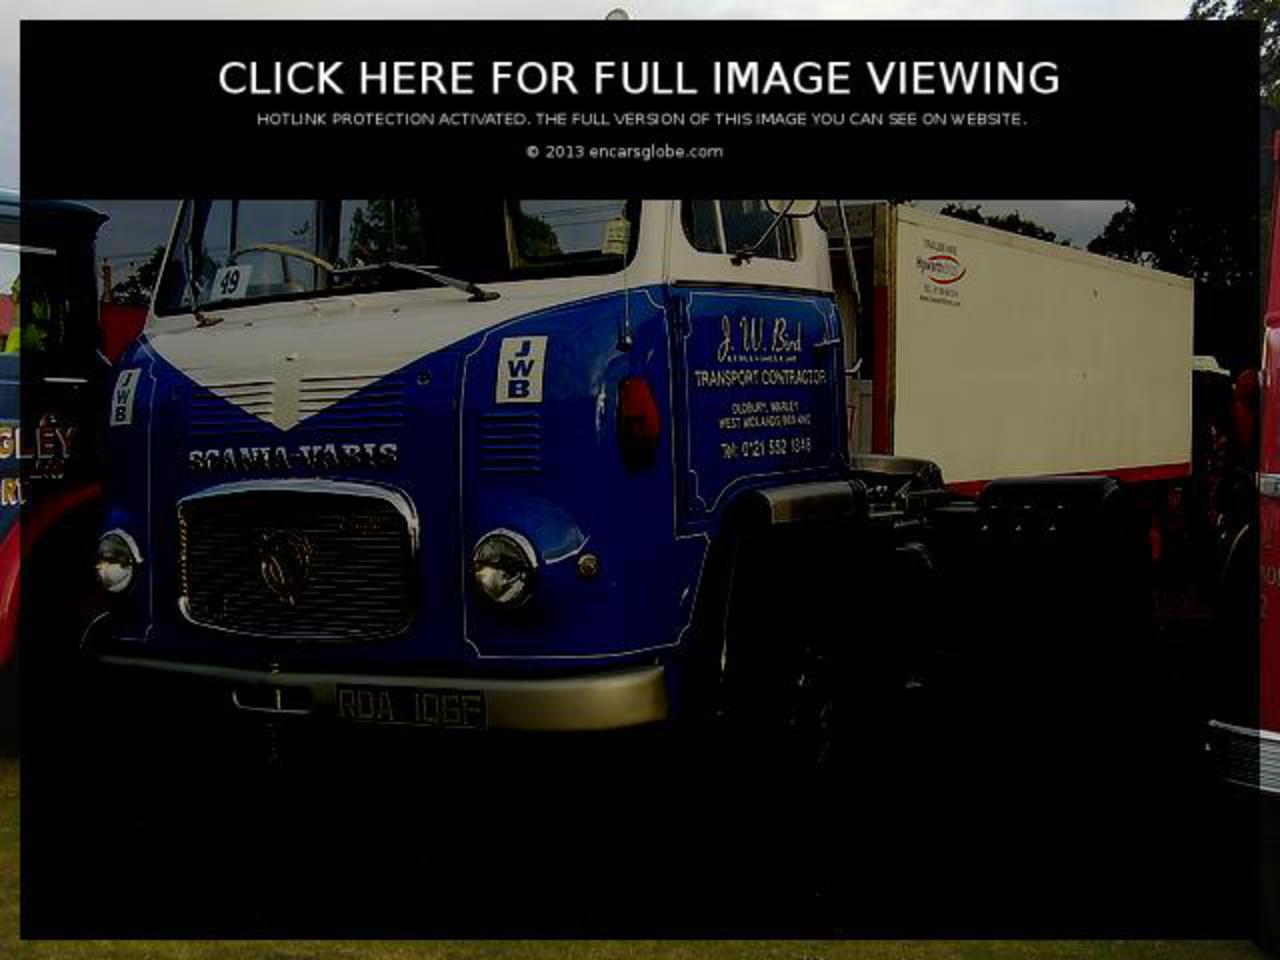 Scania-Vabis 850: Galerie de photos, informations complètes sur le modèle...